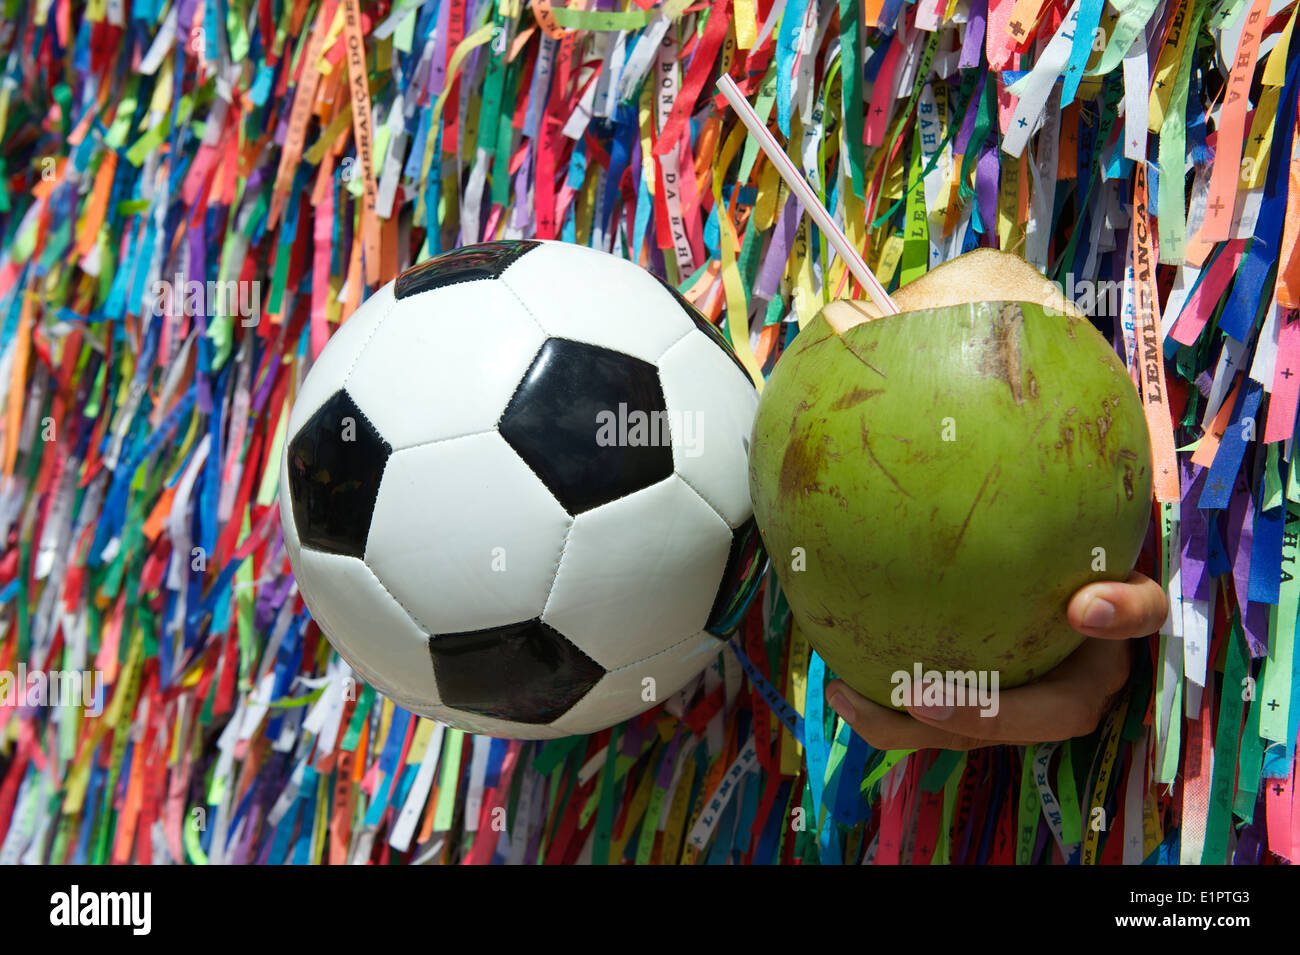 La culture brésilienne avec football ballon de soccer et de noix de coco gelado coco vert frais au mur de rubans souhaite à Salvador de Bahia au Brésil Banque D'Images